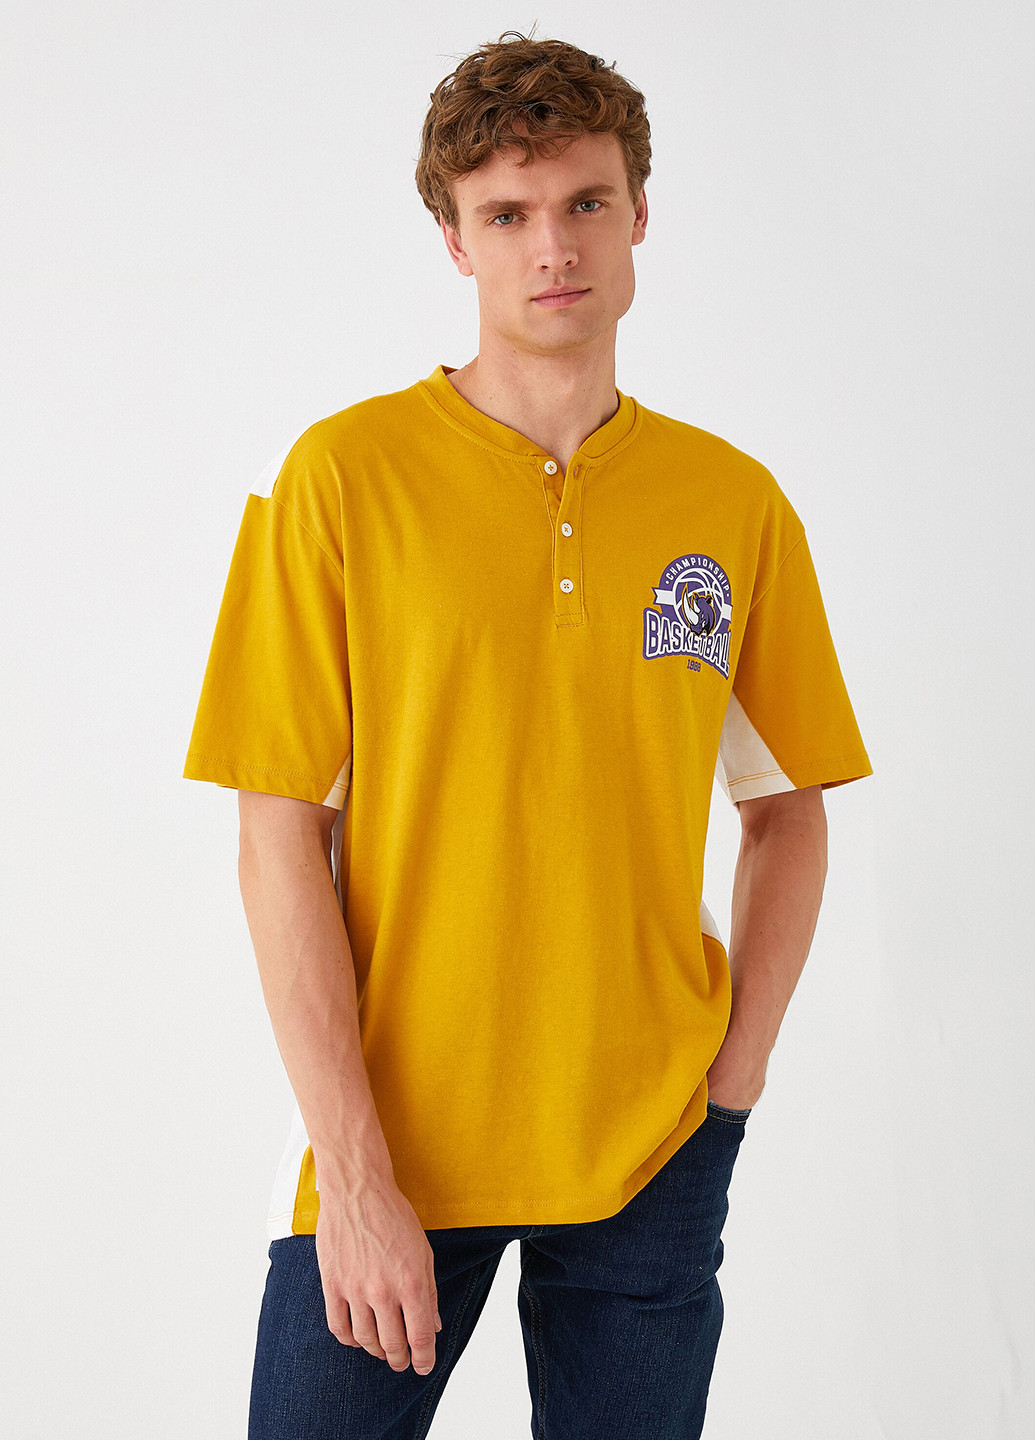 Желтая футболка-поло для мужчин KOTON с рисунком